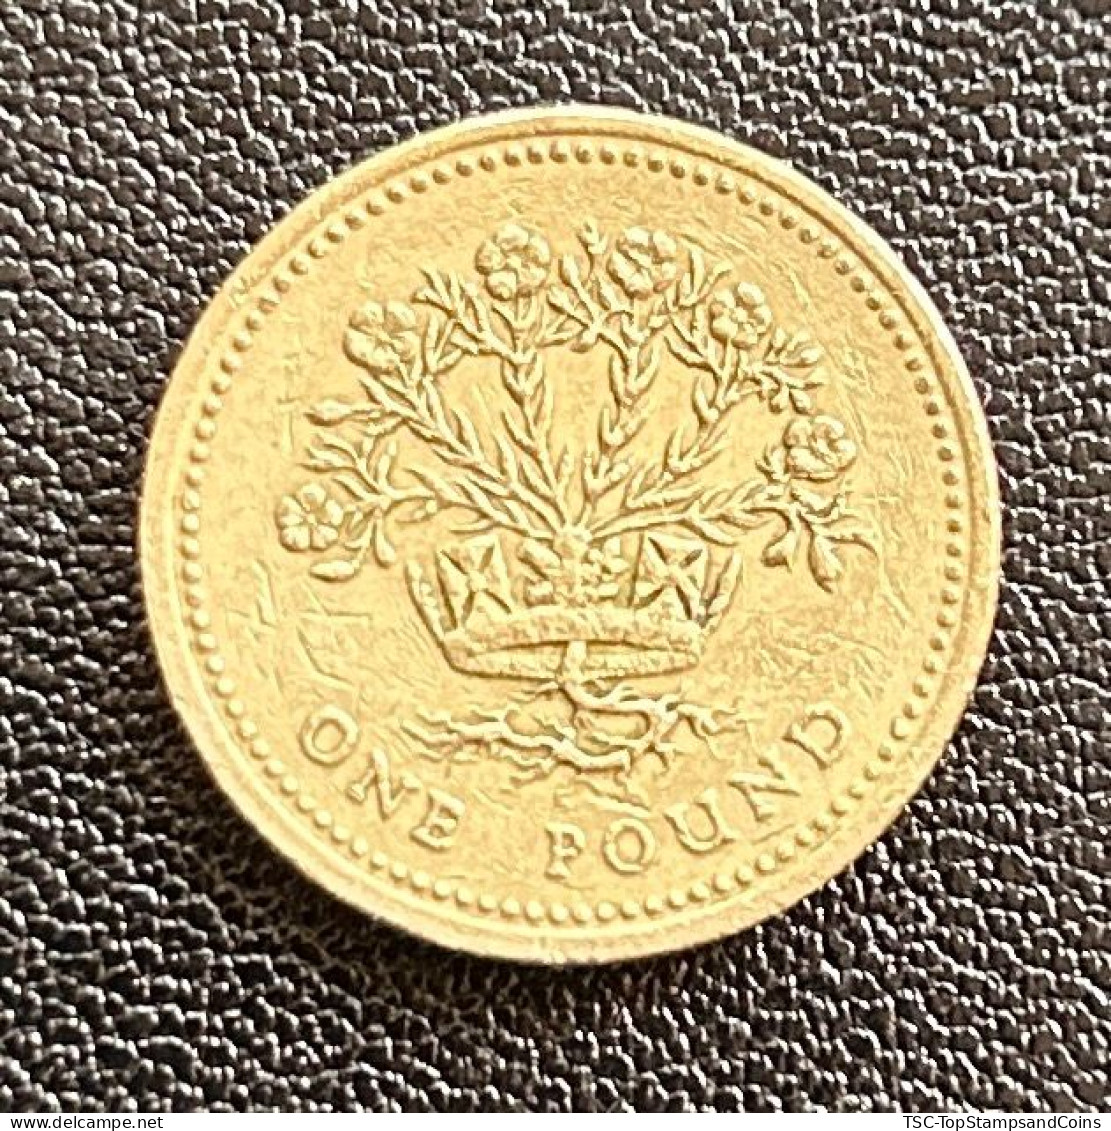 $$GB890 - Queen Elizabeth II - 1 Pound Coin - 3rd Portrait - Northern Irish Flax - Great-Britain - 1991 - 1 Pound